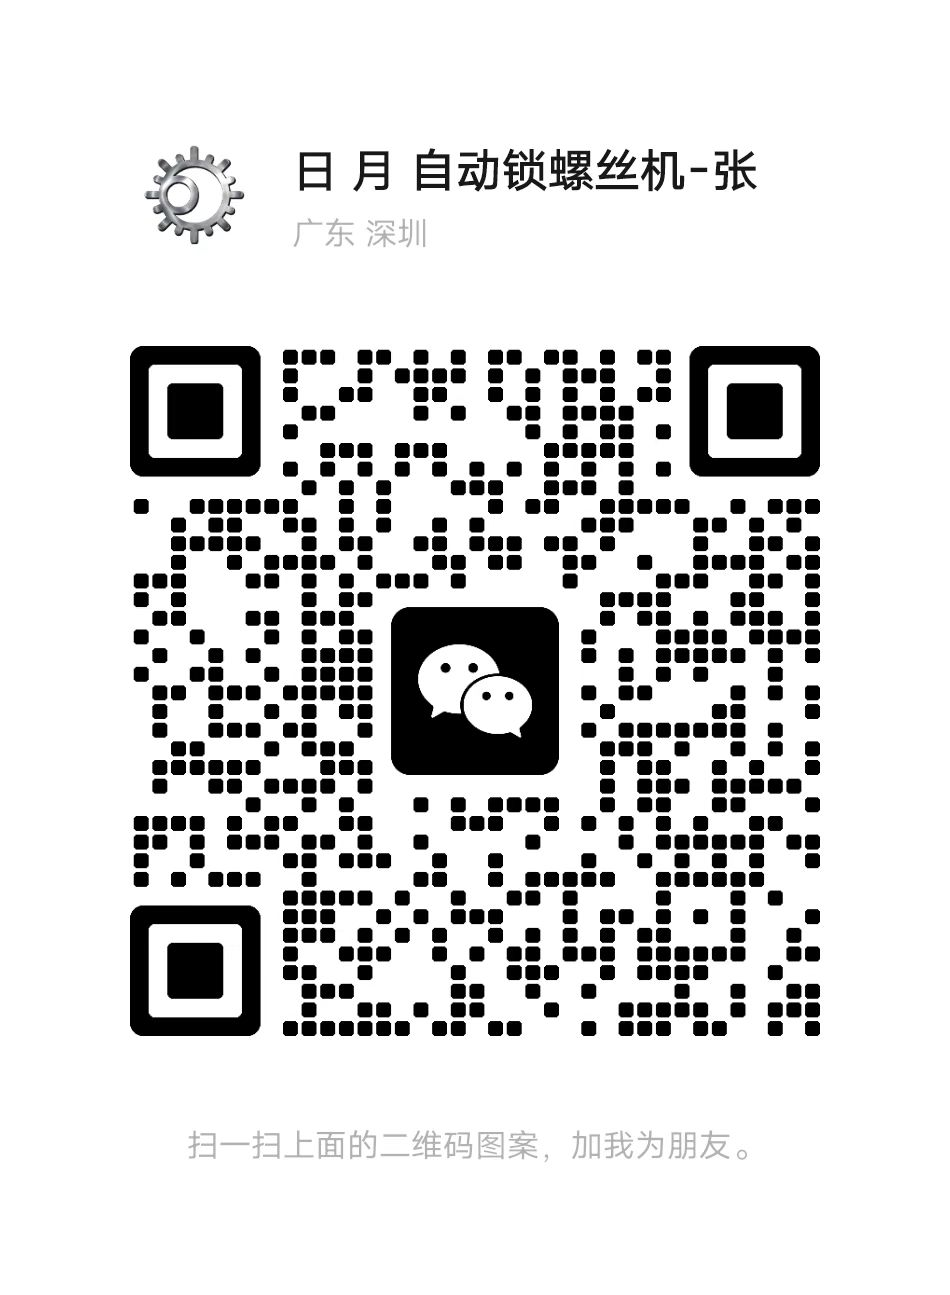 Scan WeChat QR code